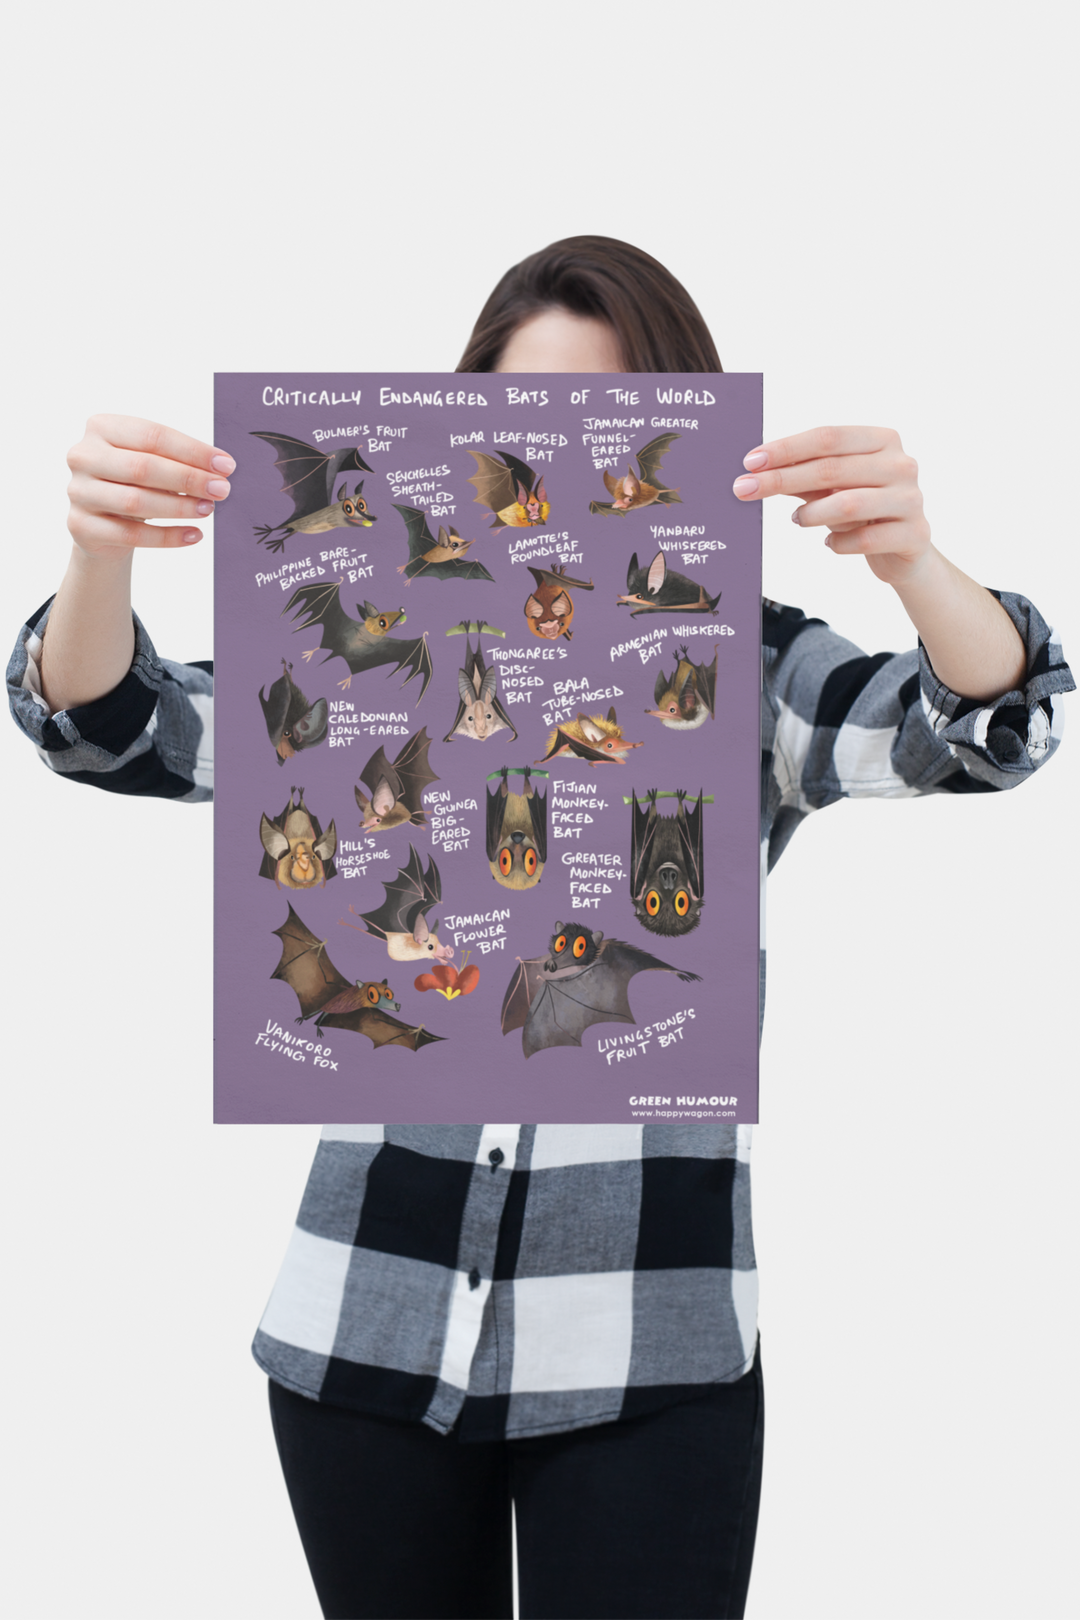 Critically Endangered Bats Non-Tearable Poster